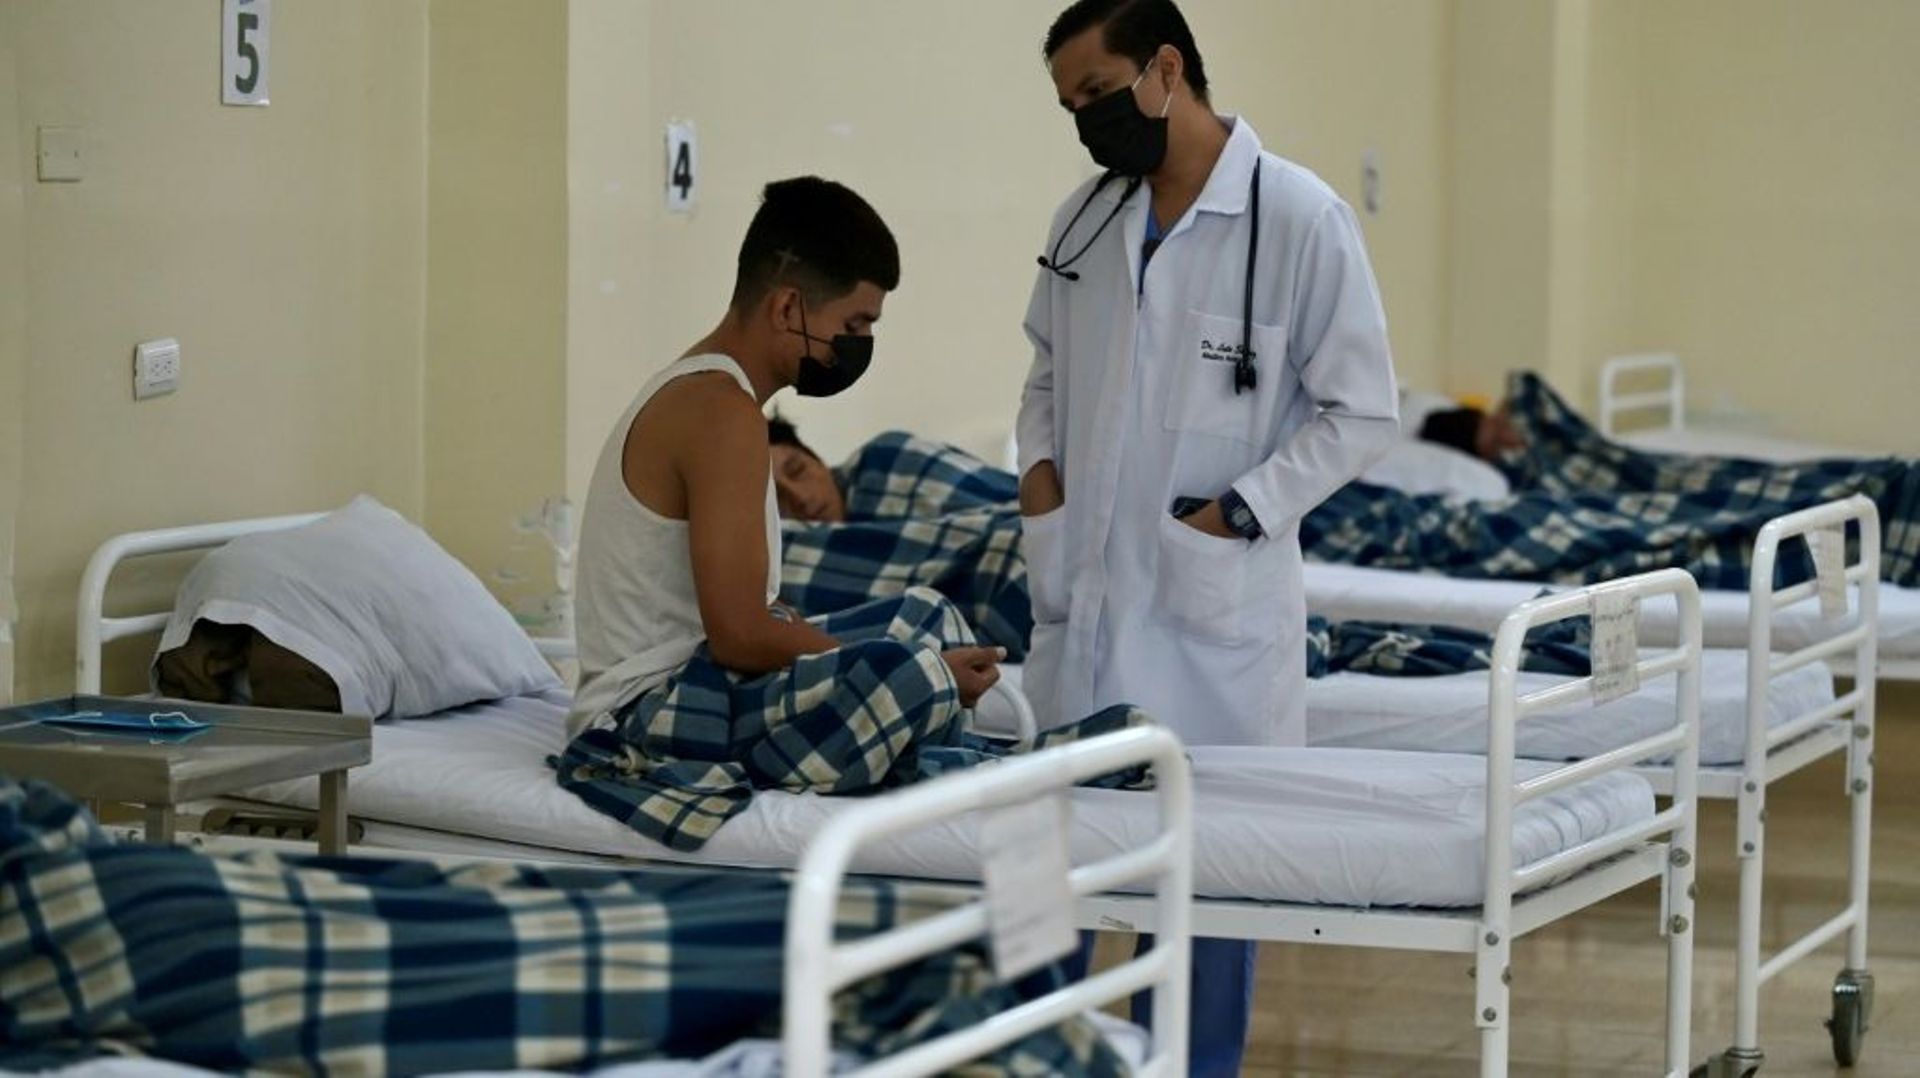 Un médecin visite des patients souffrant de problèmes d'addiction à l'hôpital Bicentenario de Guayaquil, le 6 janvier 2023 en Equateur